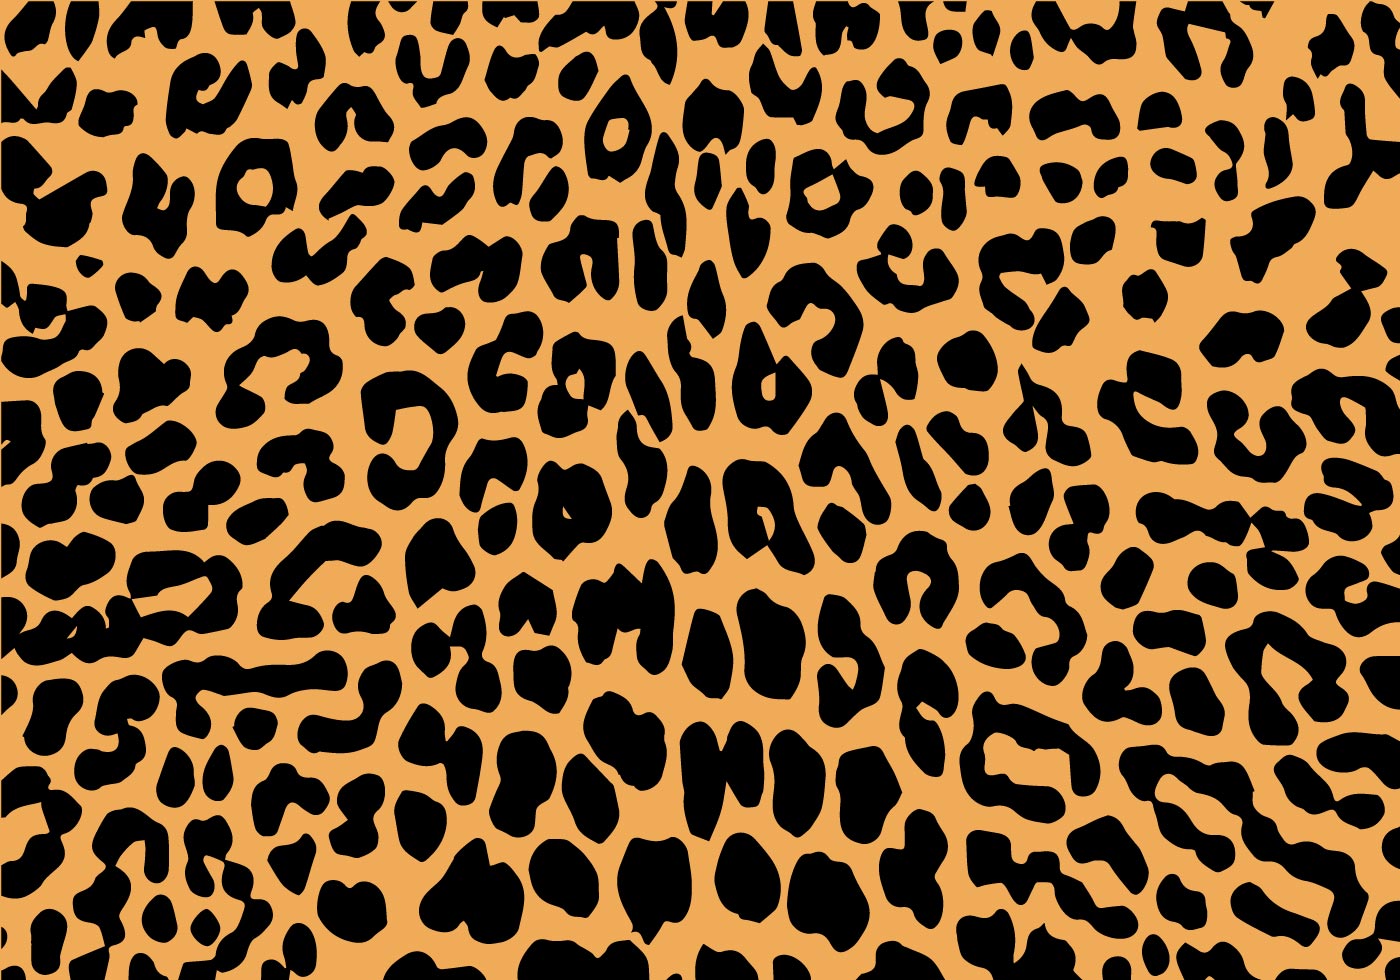 Download Free Leopard Print Vector 94079 Vector Art at Vecteezy